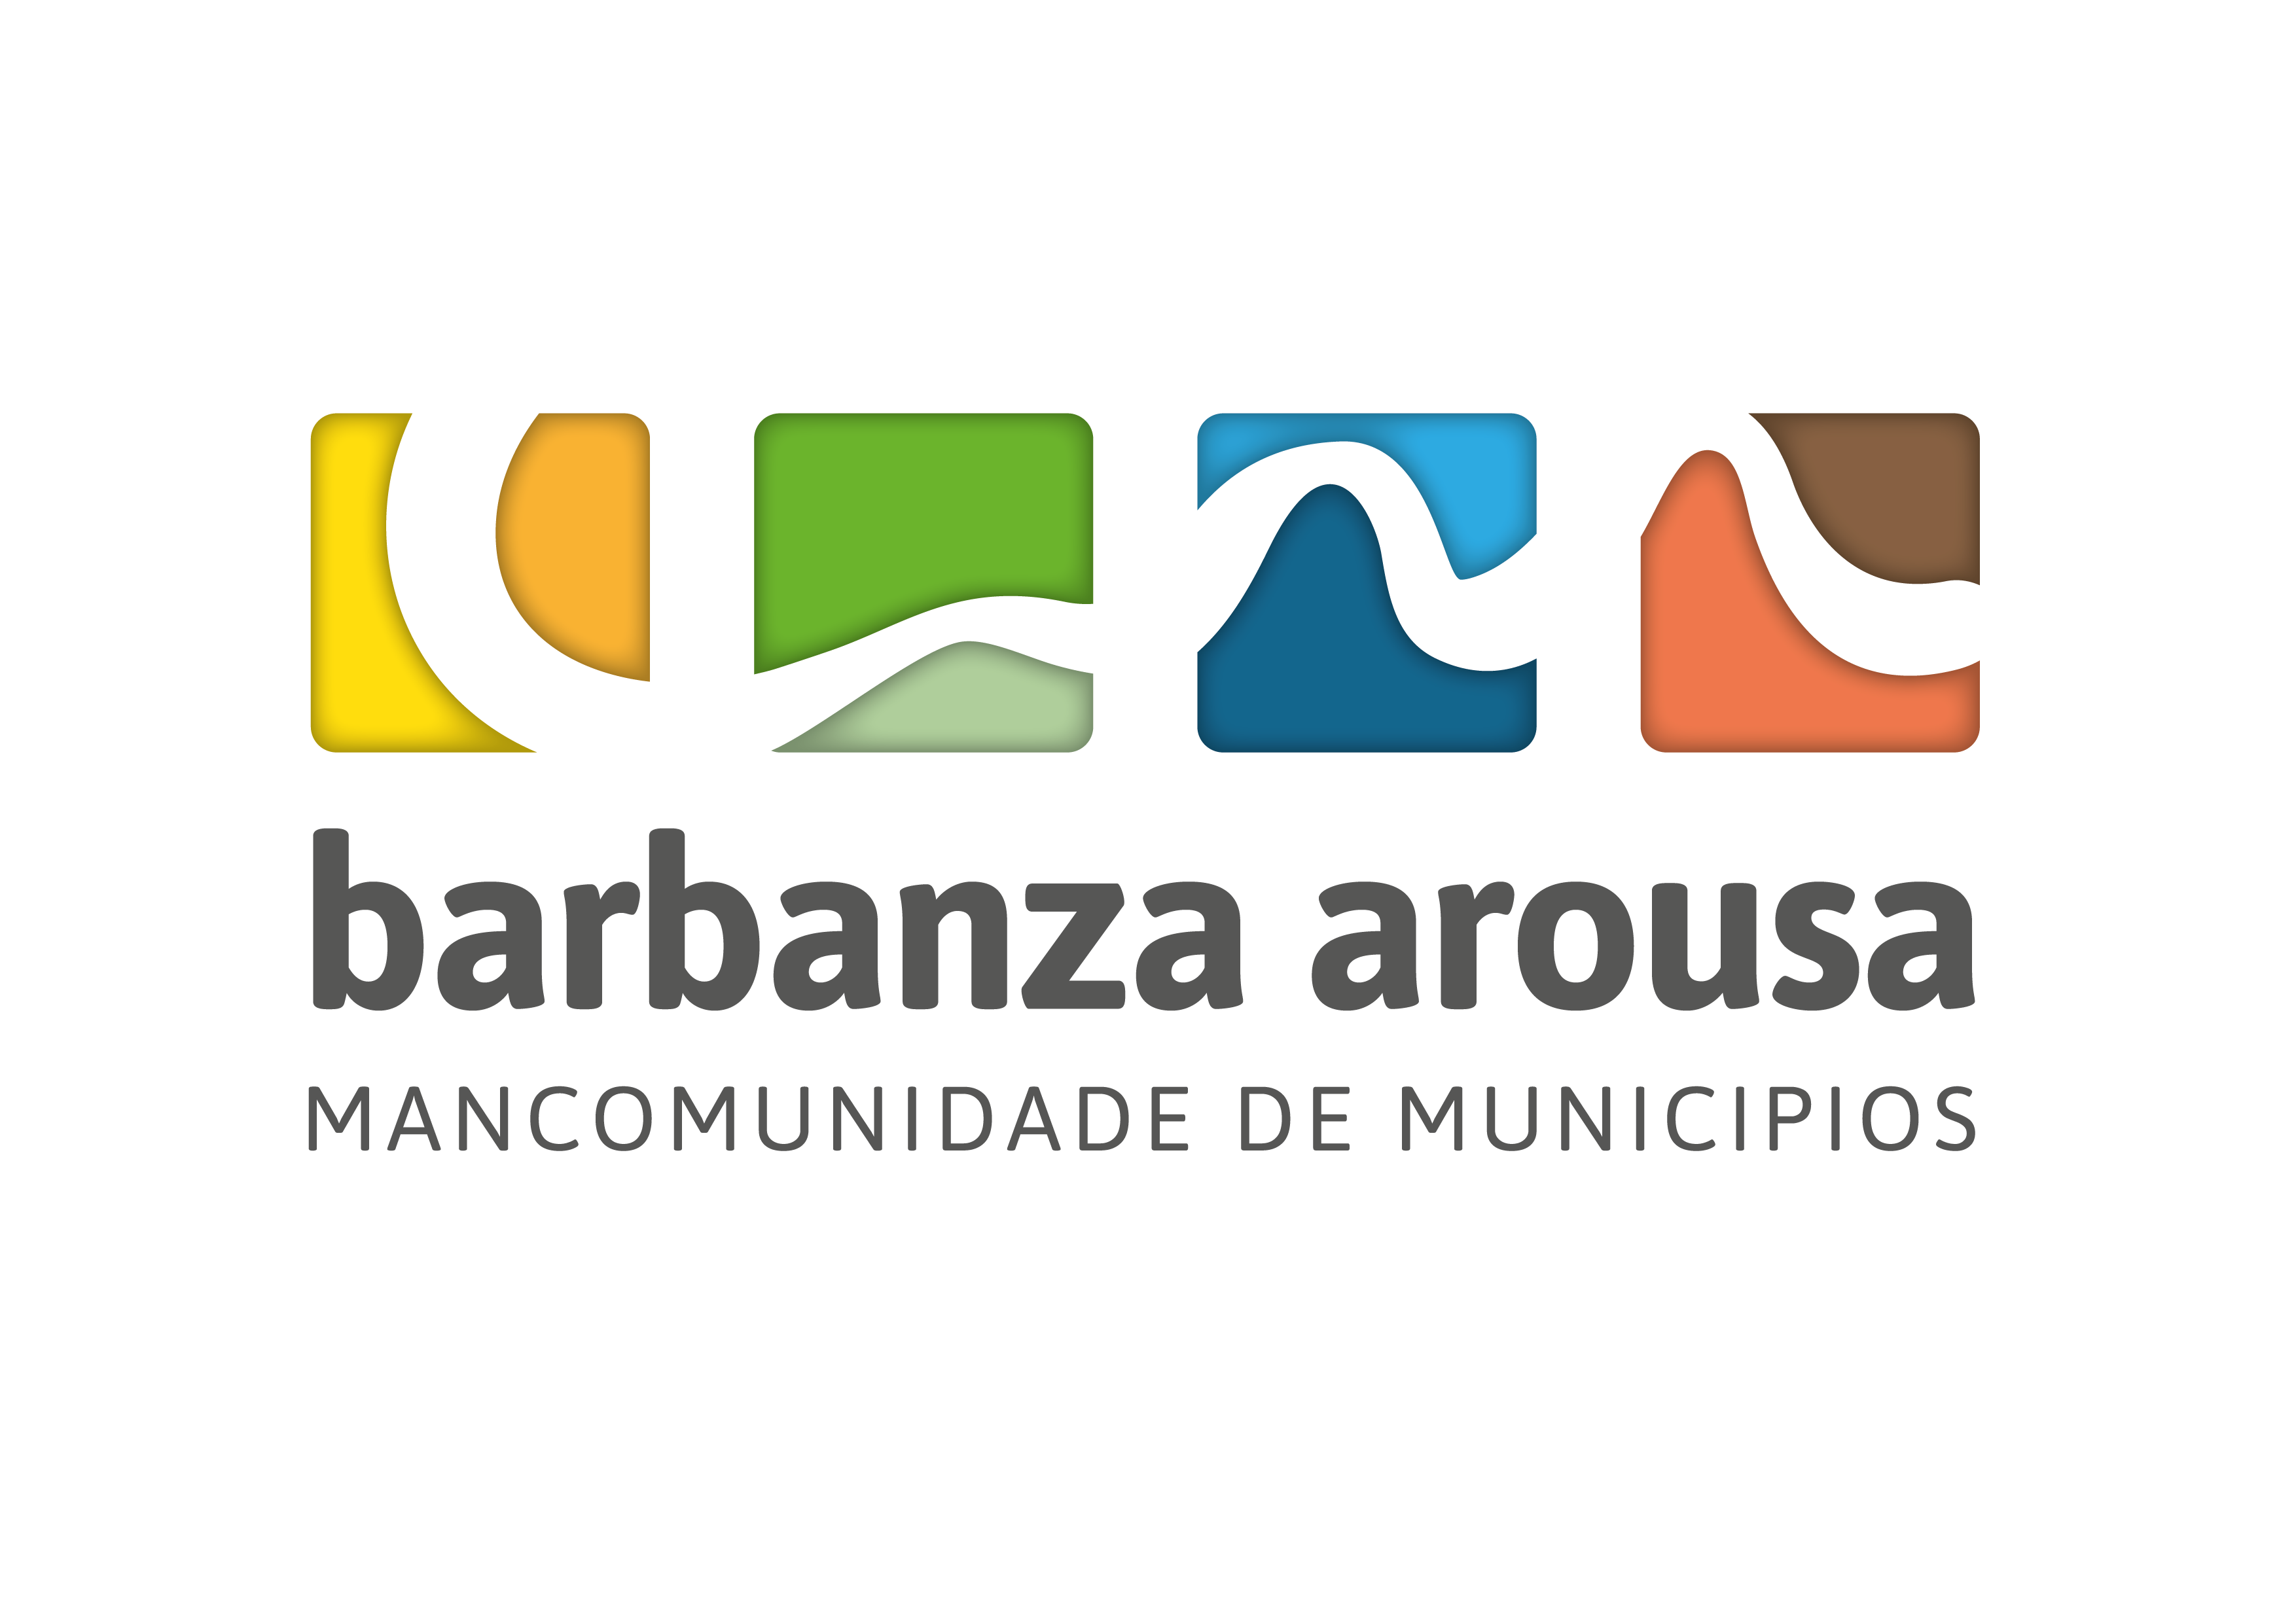 Mancomunidade de municipios barbanza arousa